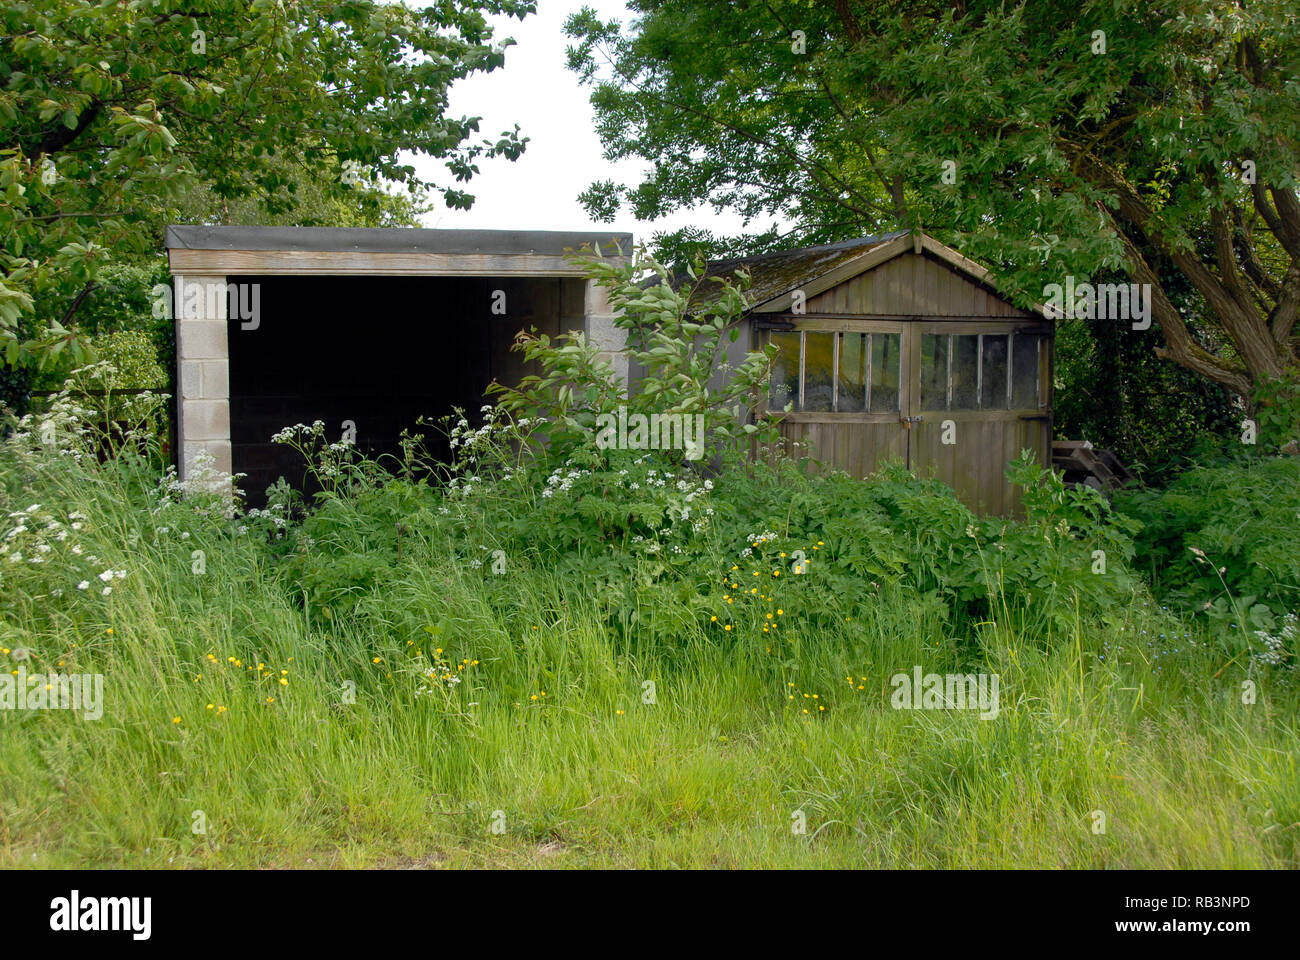 Inländische Garagen unzugänglichen aufgrund der langen Gras vor der Tür wächst, England Stockfoto